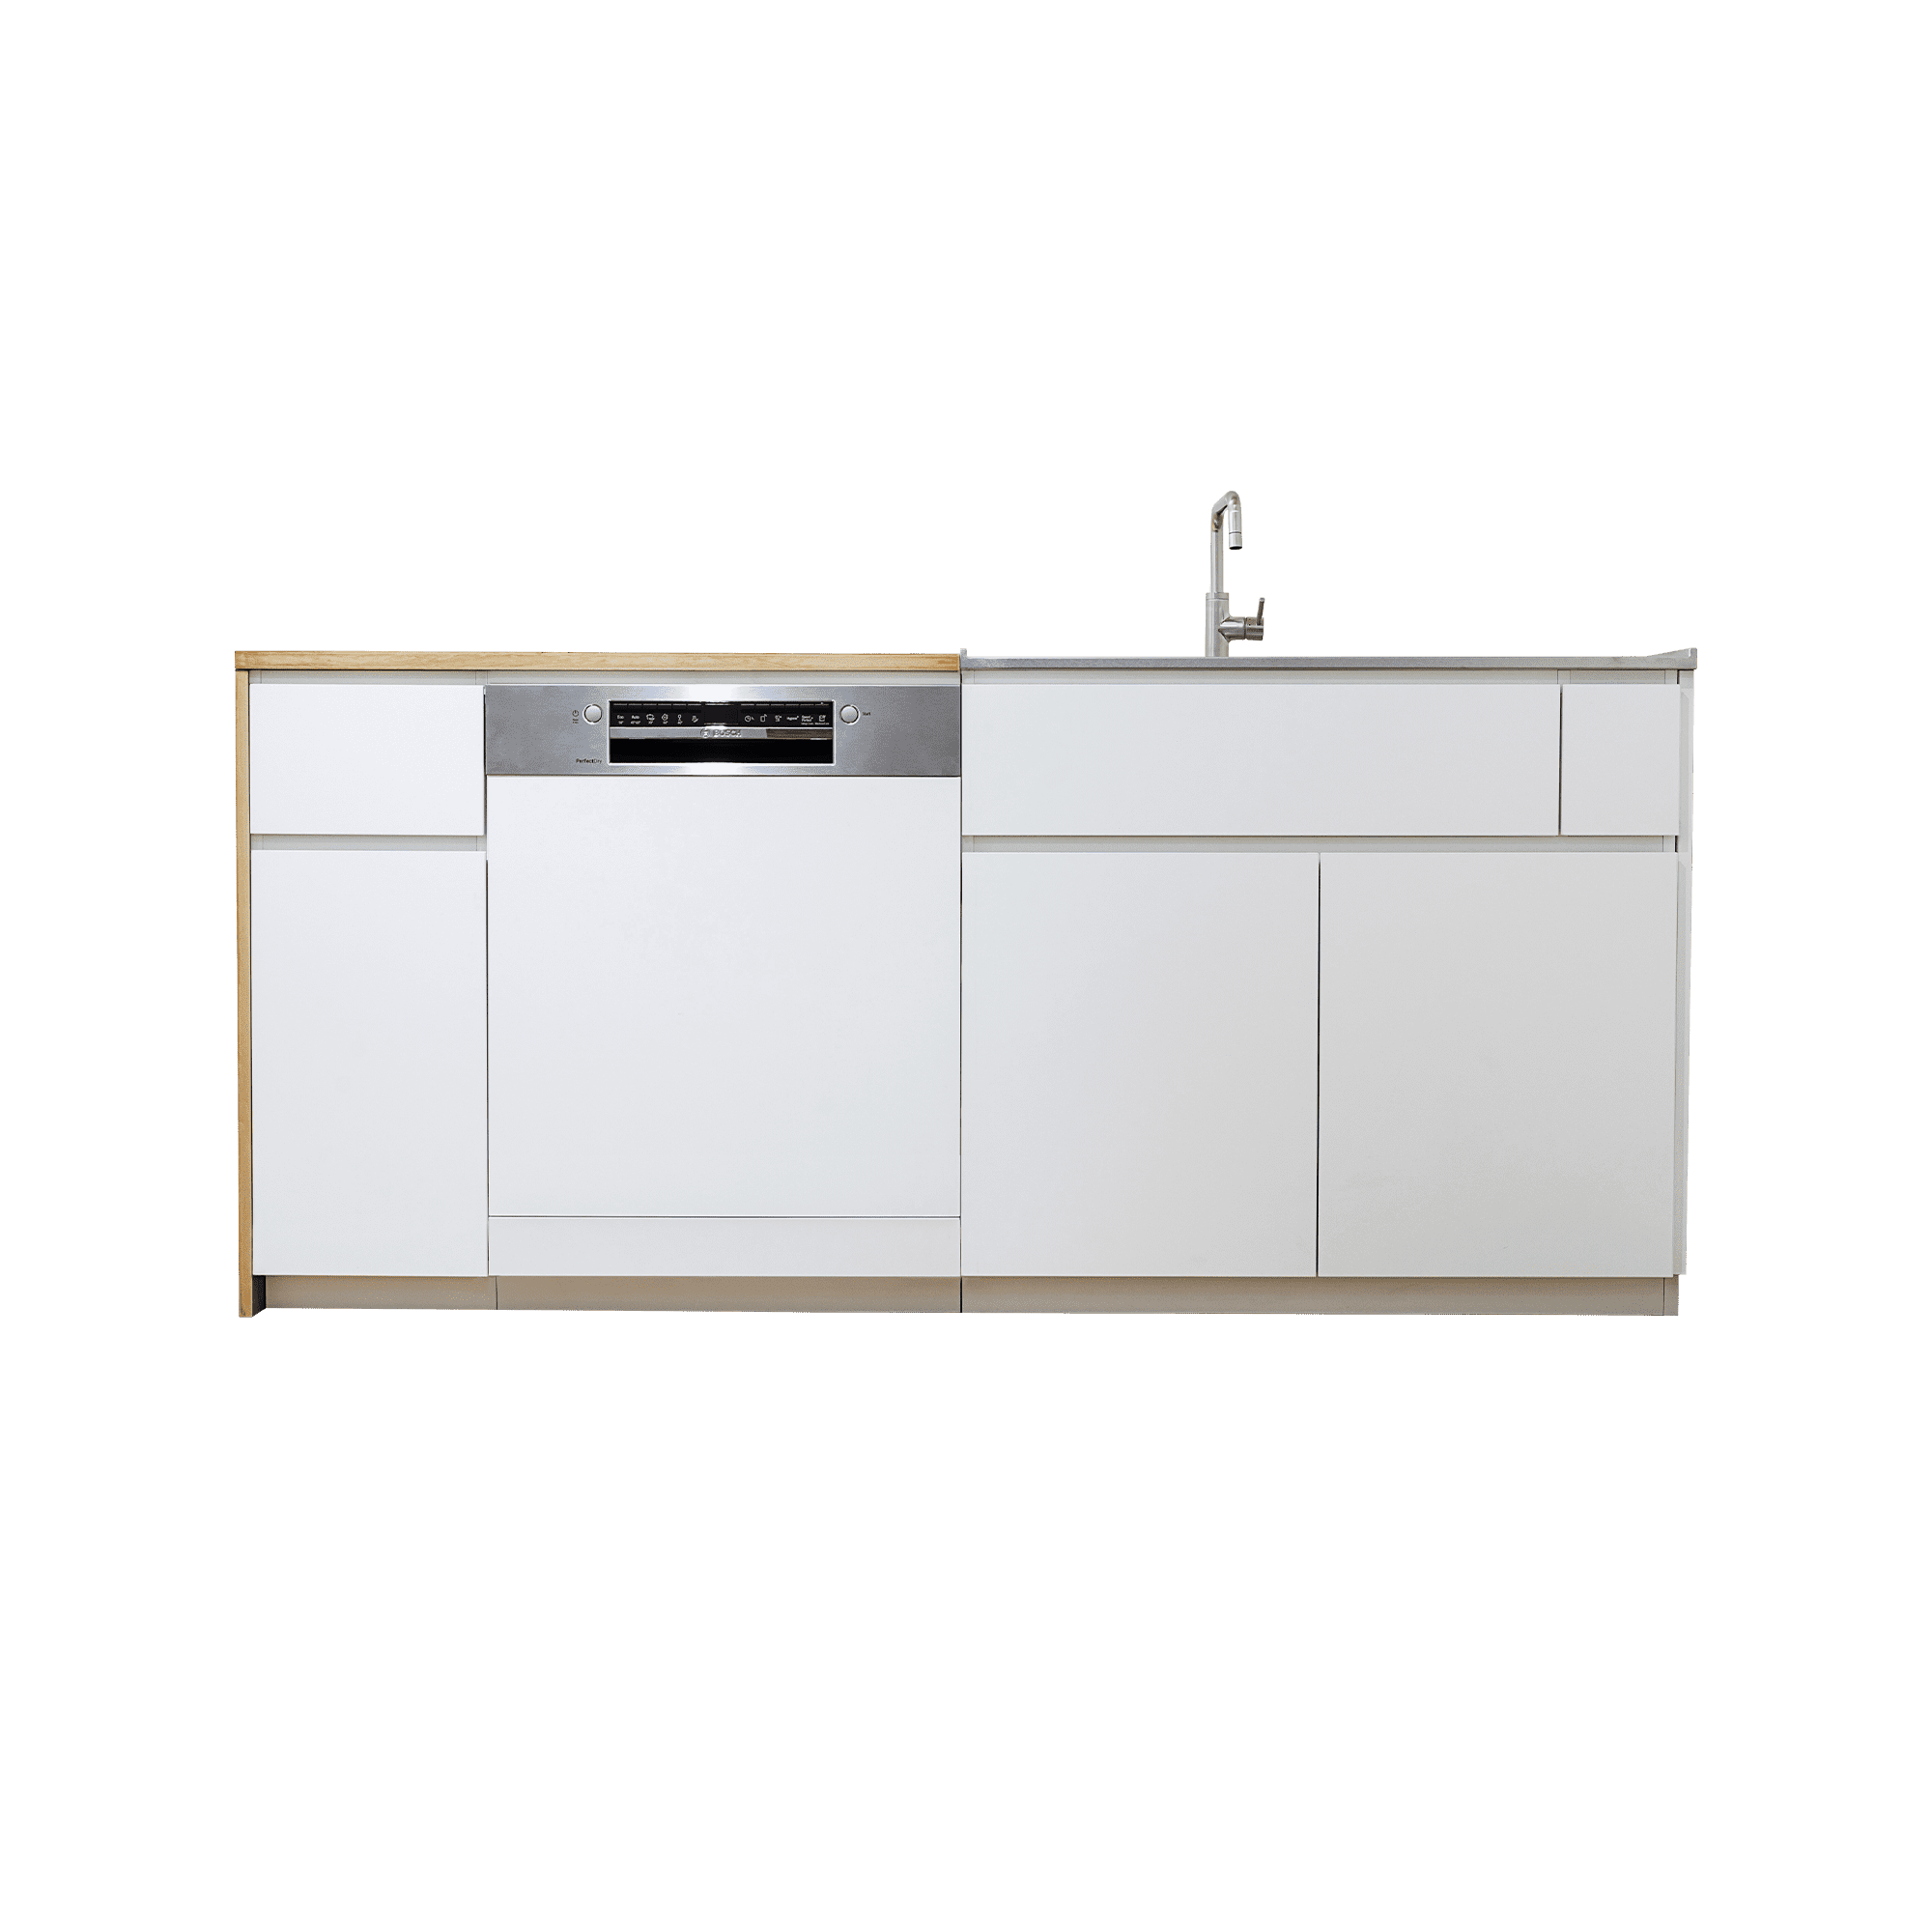 木天板キッチンⅡ型 対面シンク側 フロントオープン食洗機 W600タイプ